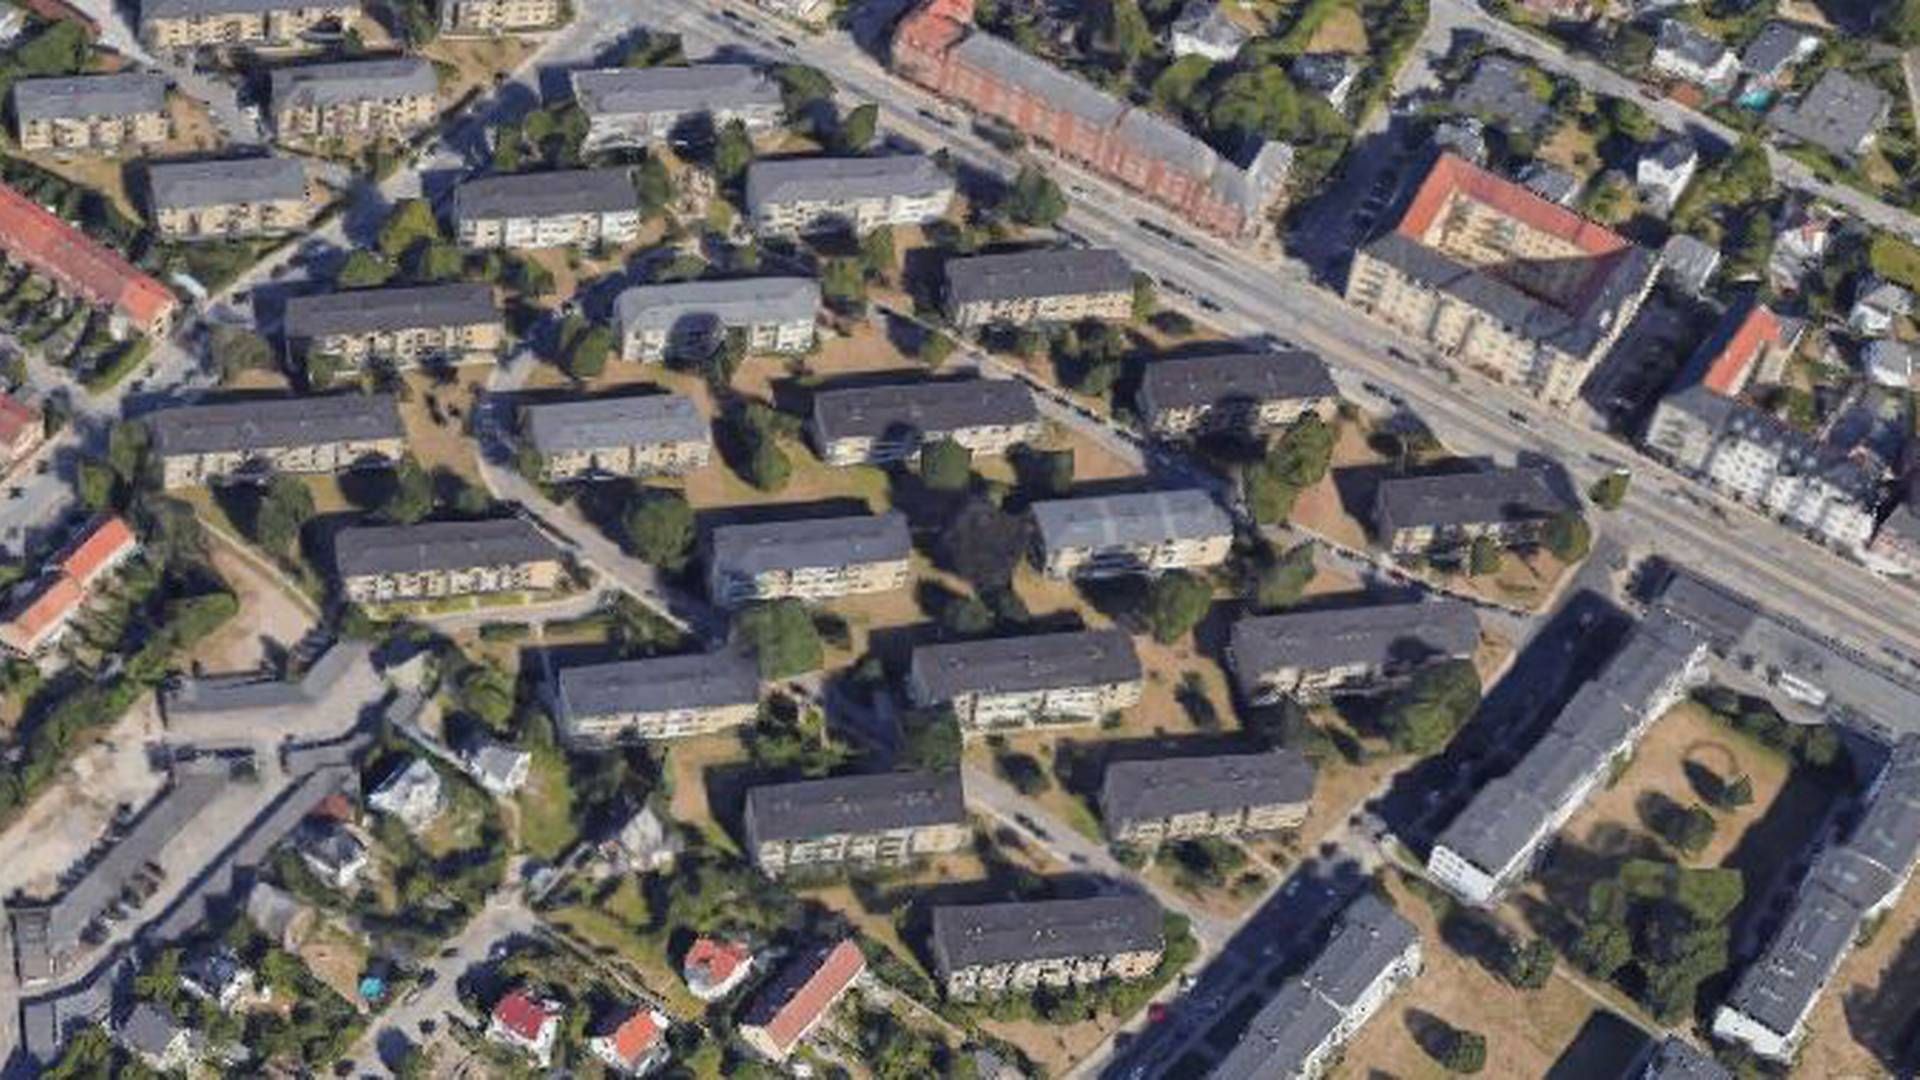 En del af de handlede boliger er placeret her i Blidahlpark ved Strandvejen i Hellerup. | Foto: Google Maps